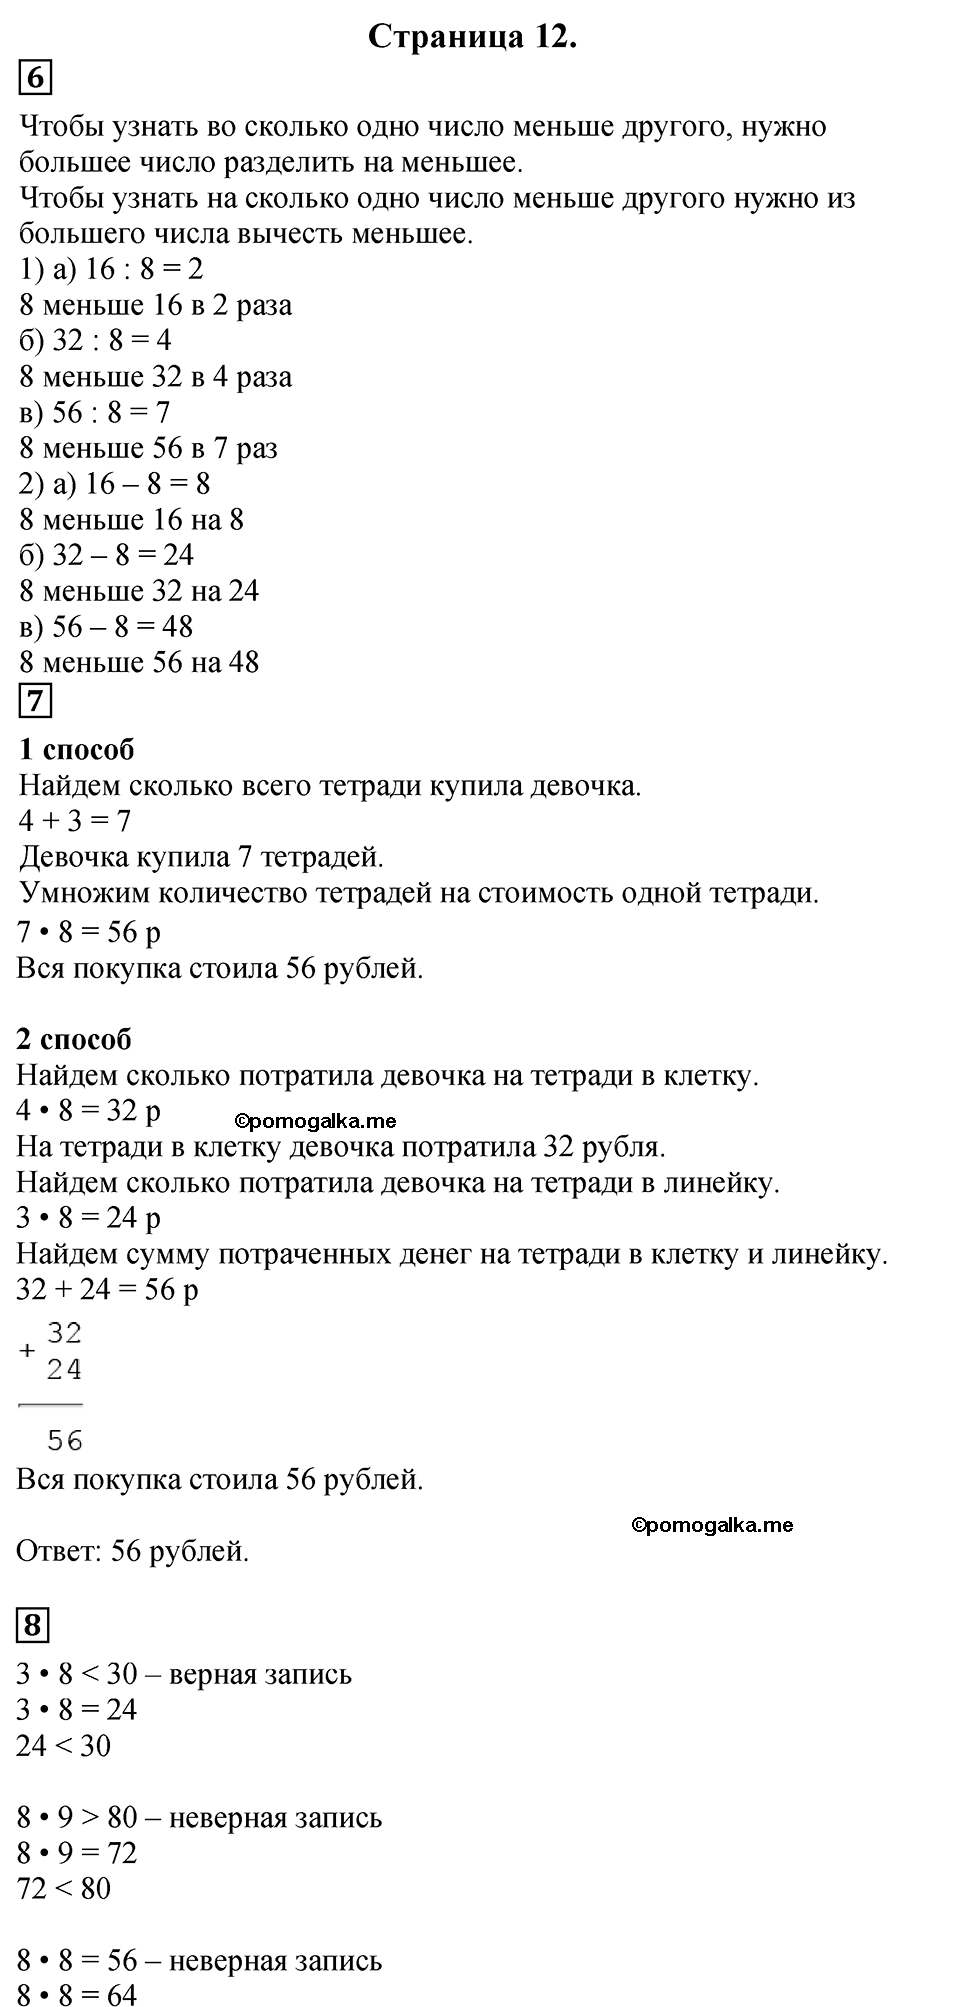 Страница №12 Часть 2 математика 3 класс Дорофеев